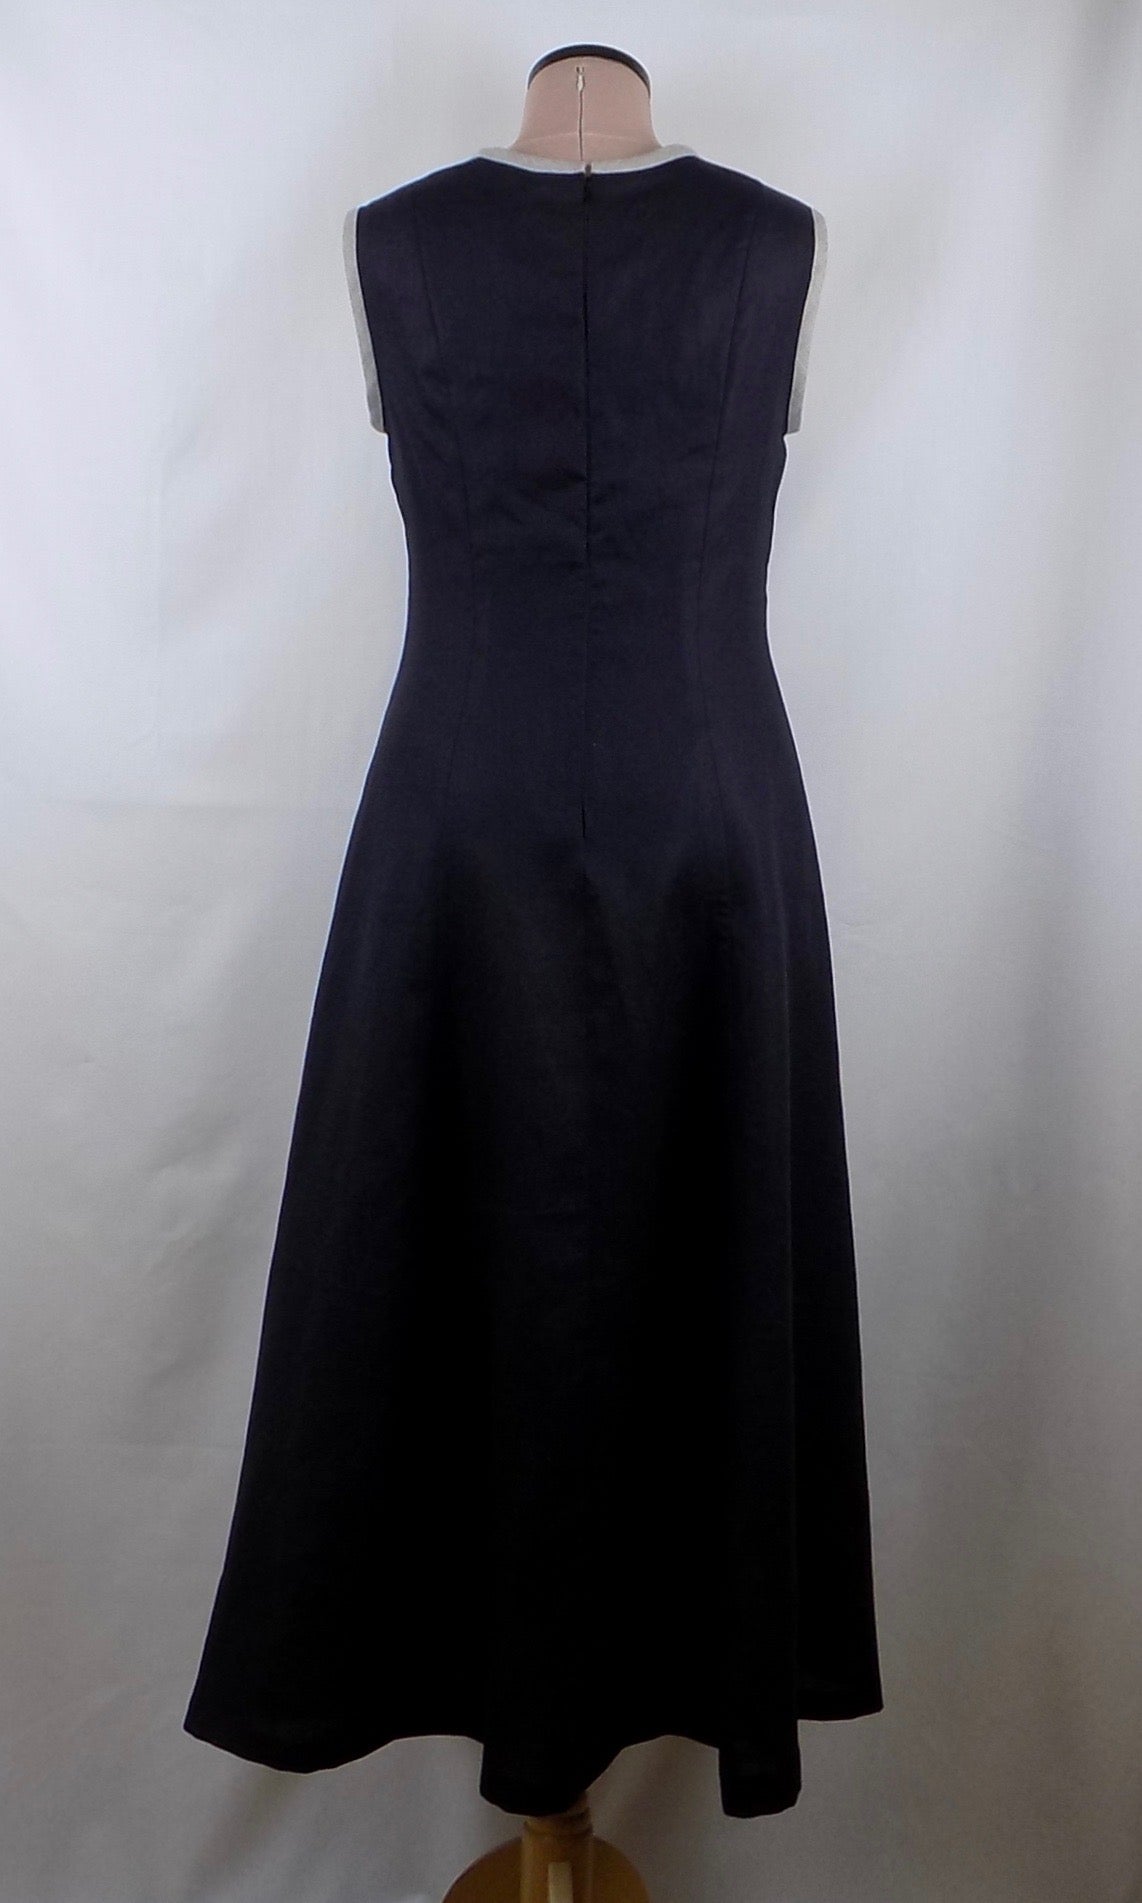 Linen dress - black